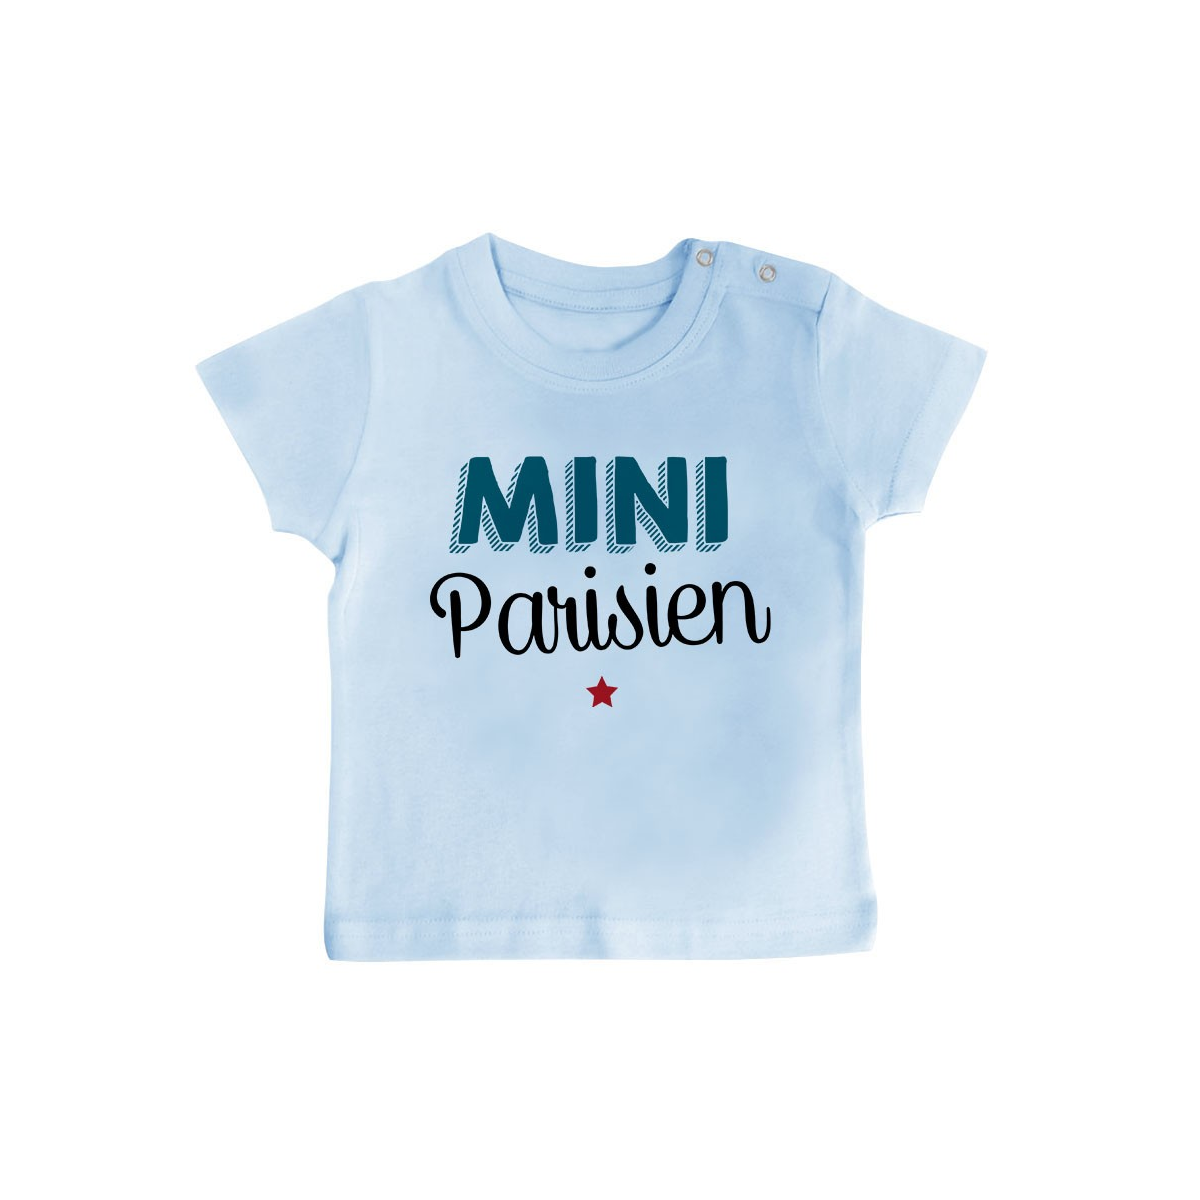 T-Shirt bébé Mini Parisien